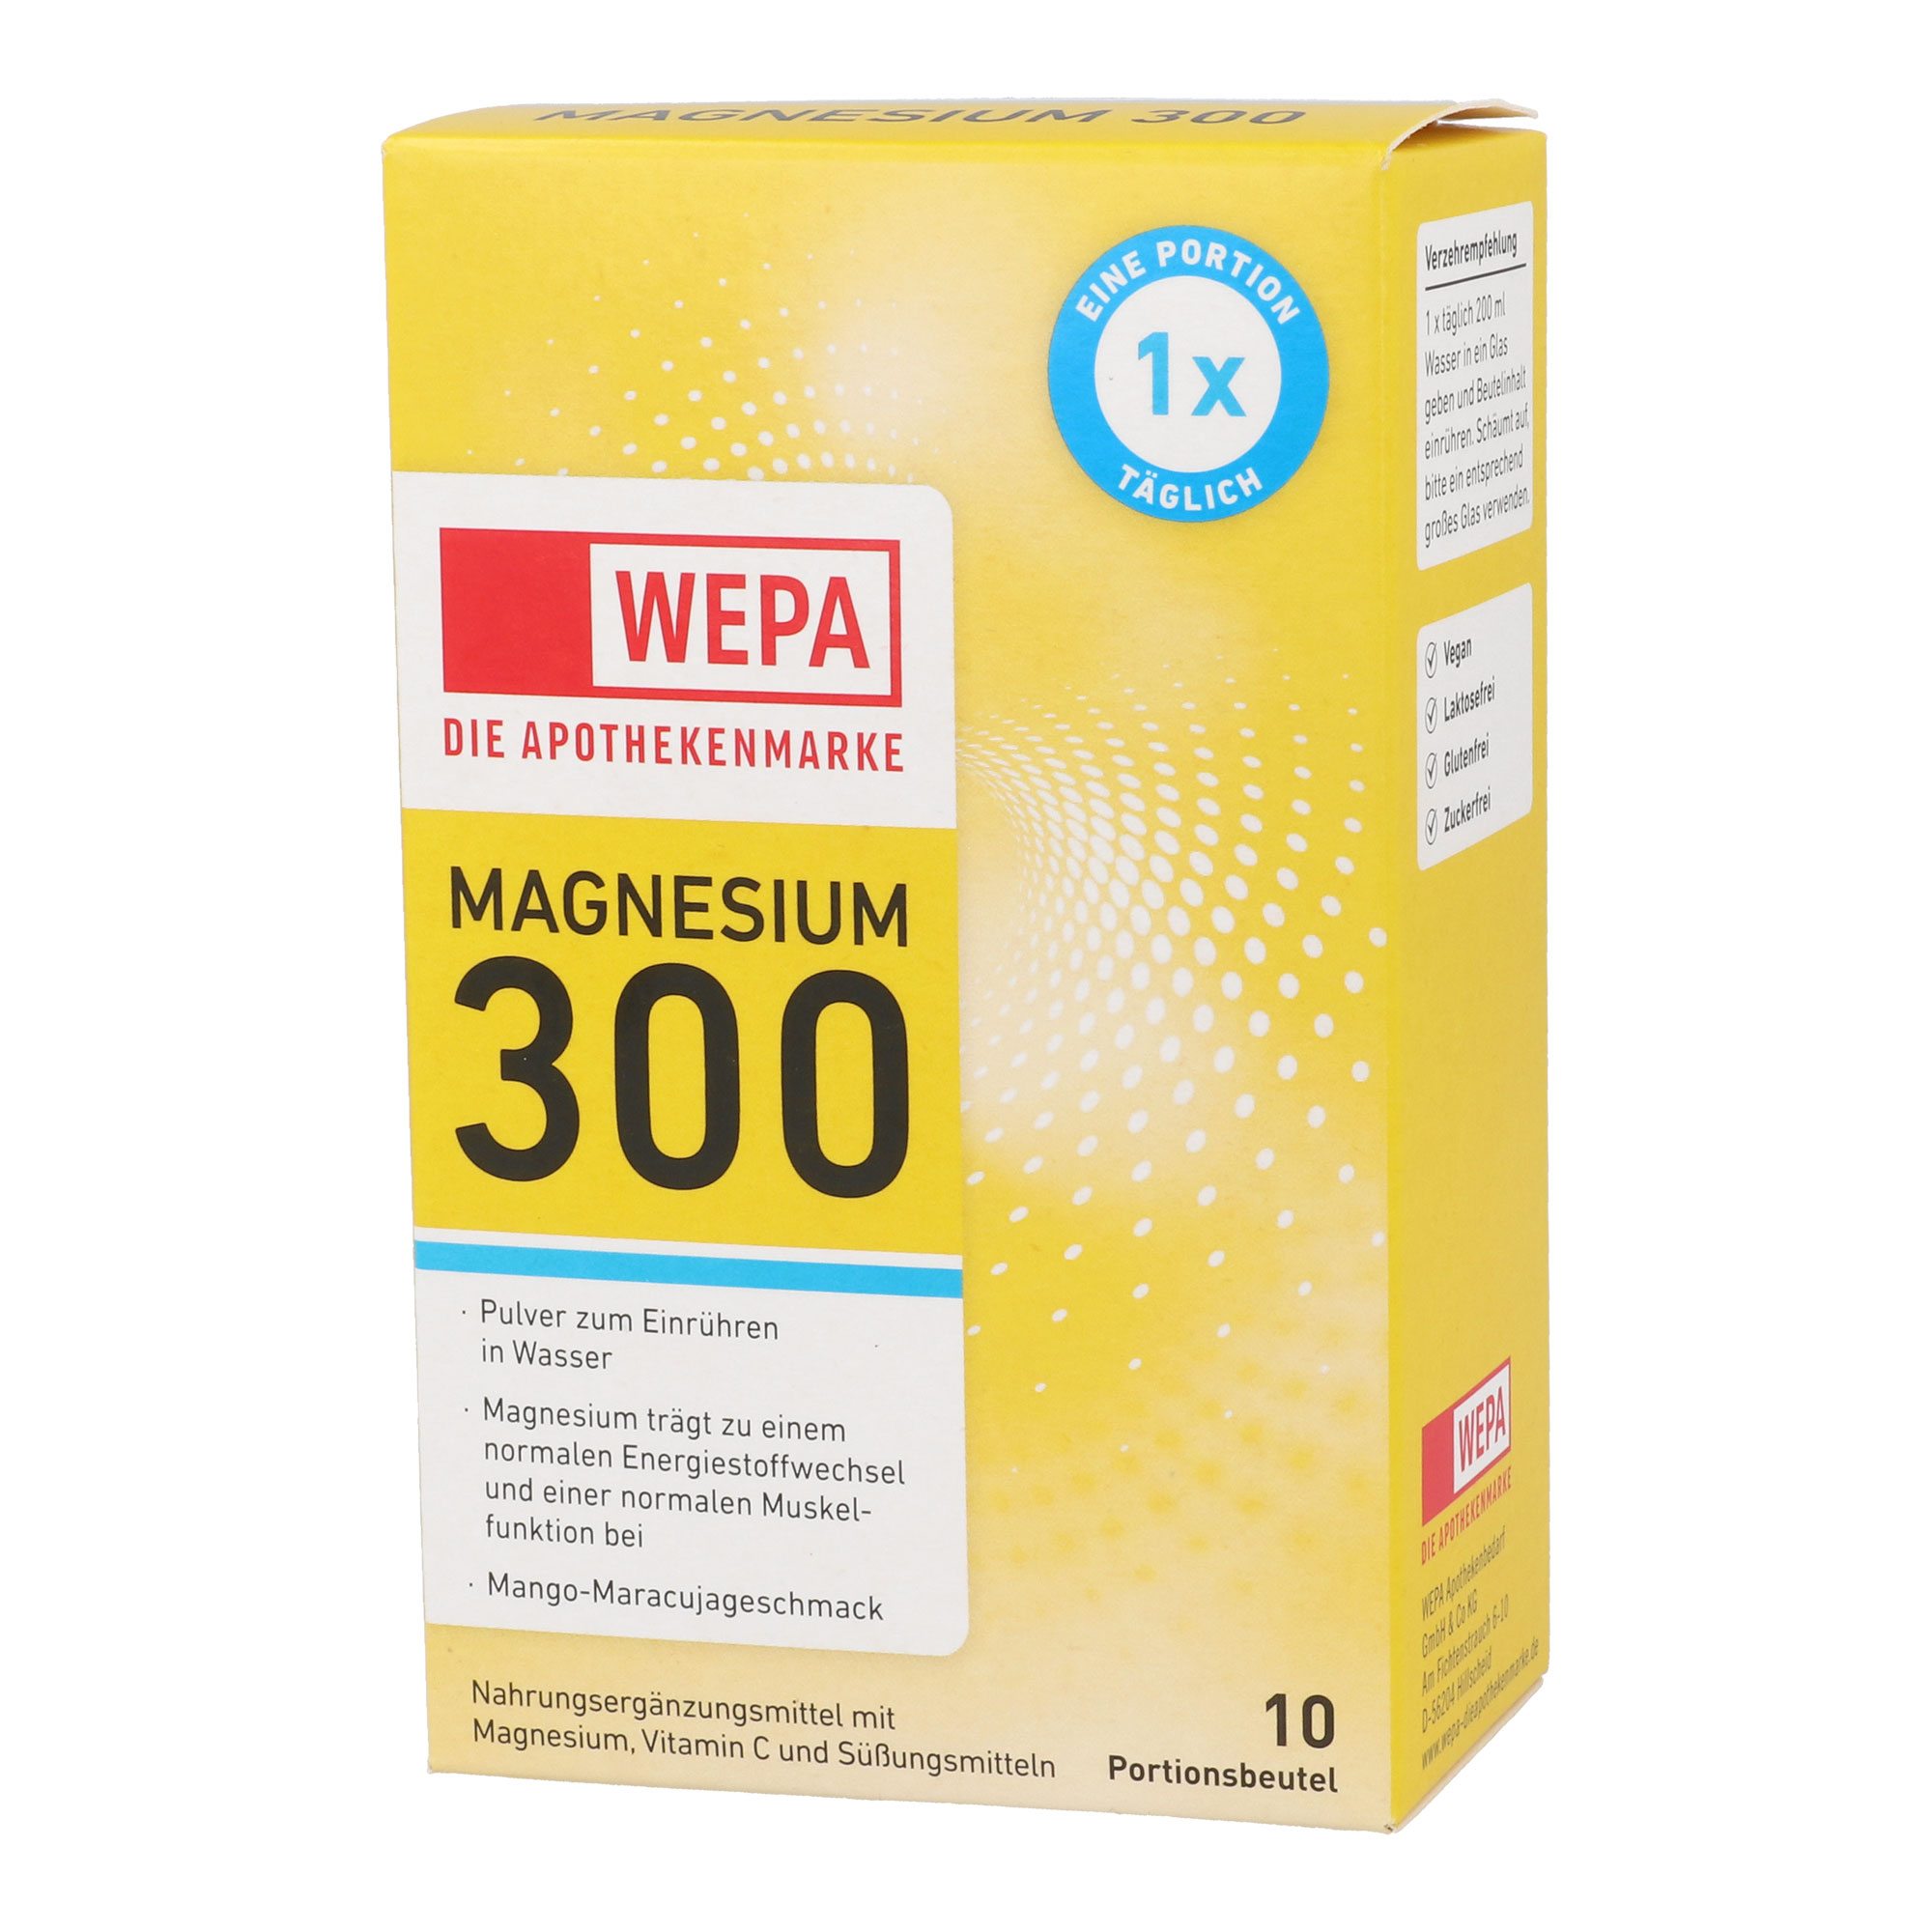 Nahrungsergänzungsmittel mit Magnesium und Vitamin C. Zuckerfreies Pulver zum Einrühren in Wasser. Mit Mango-Maracujageschmack.